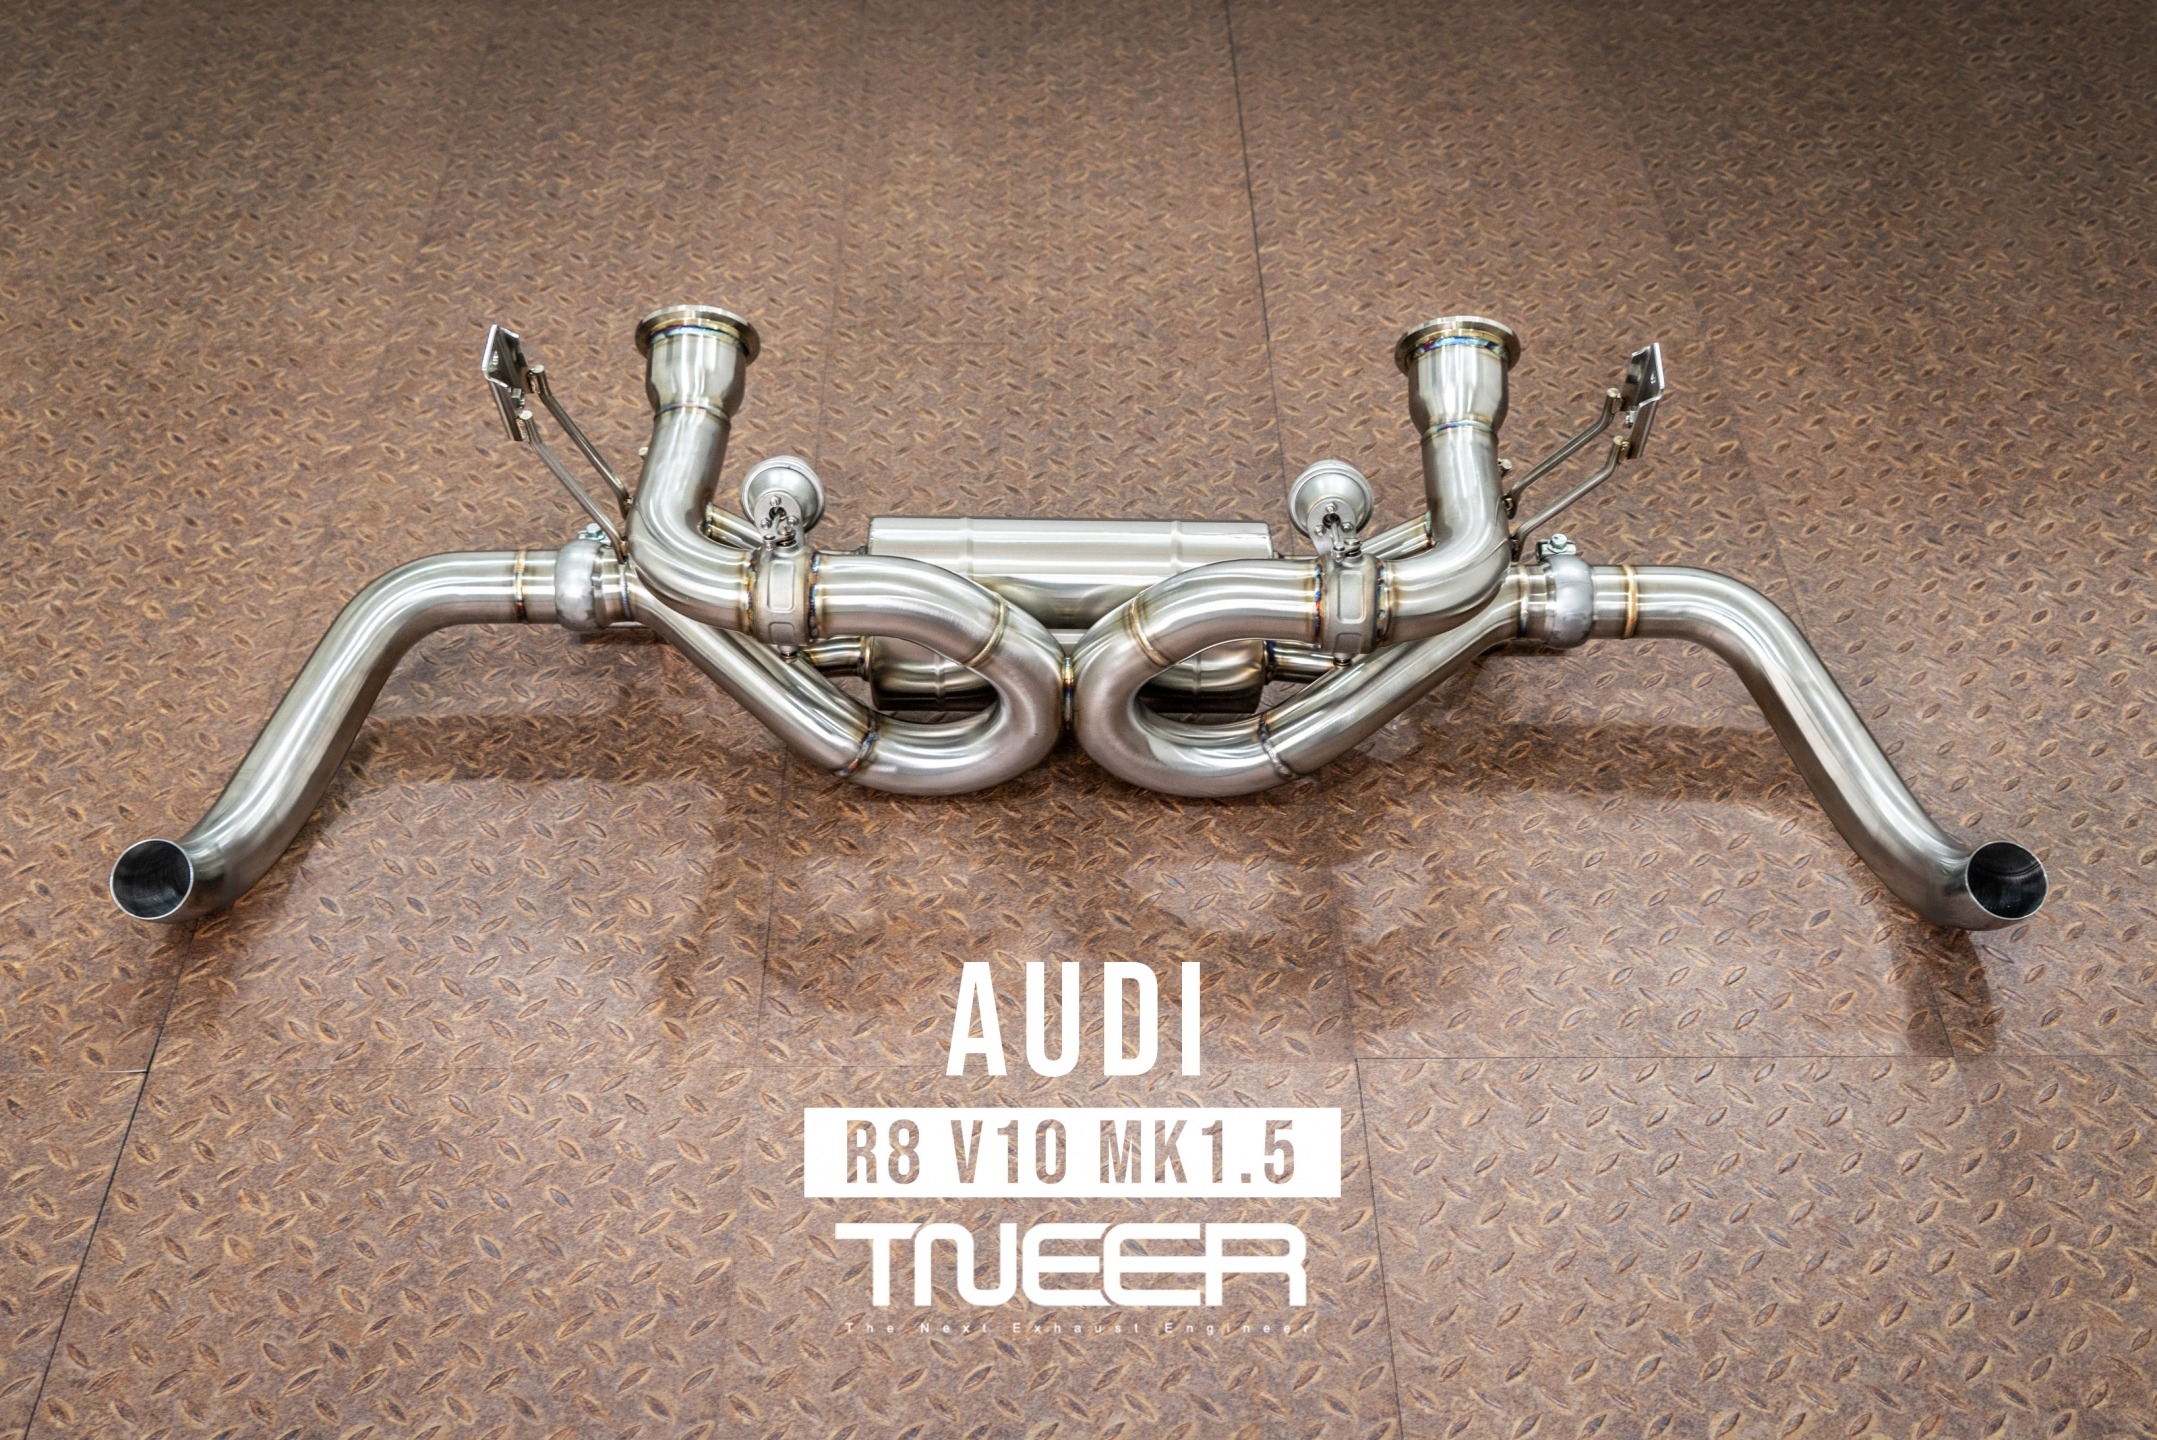 Audi R8 (MK1.5) V10 5.2 FSI TNEER Exhaust System (Valvetronic)